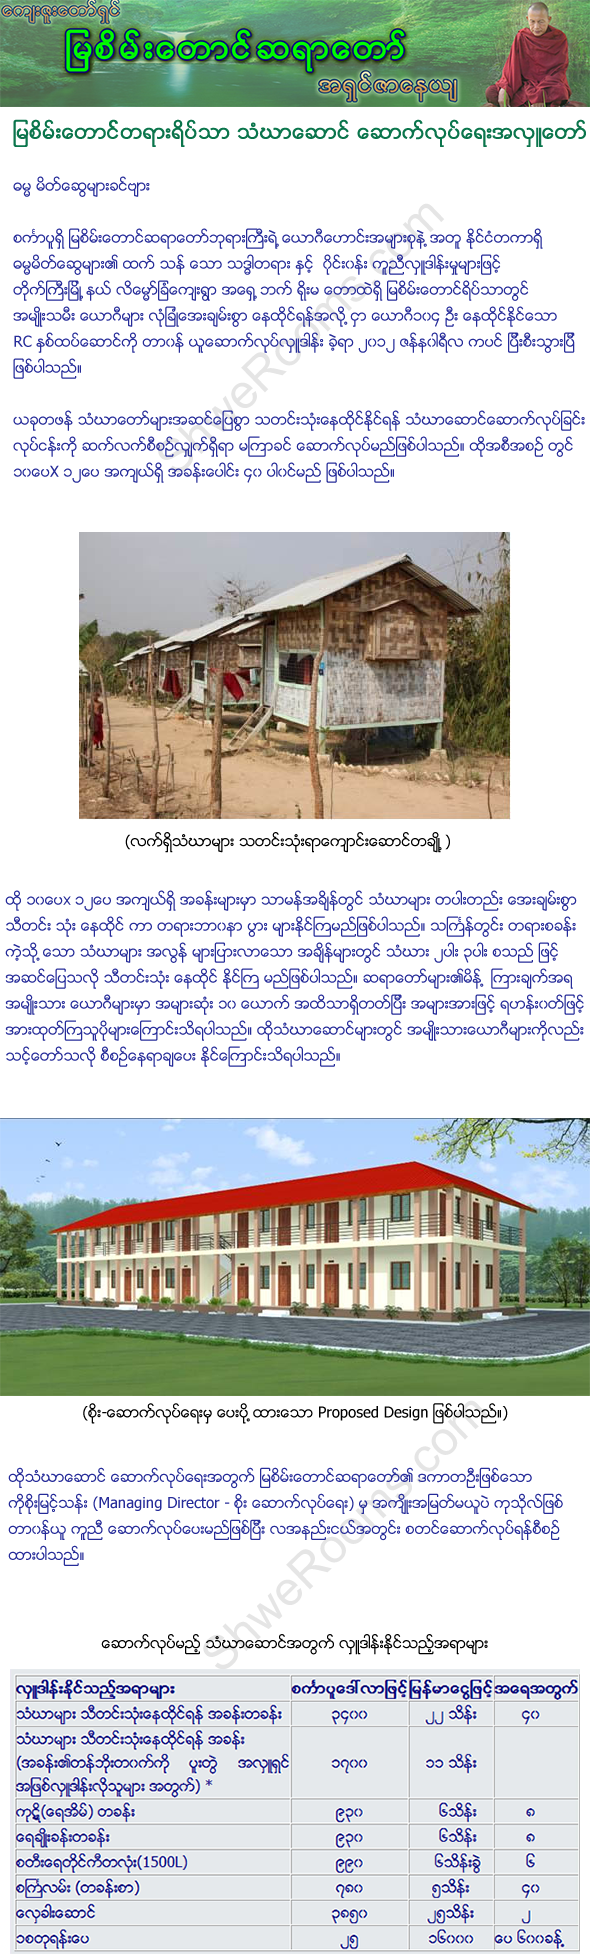 Mya Sein Taung Meditation Center (Taik Gyi)